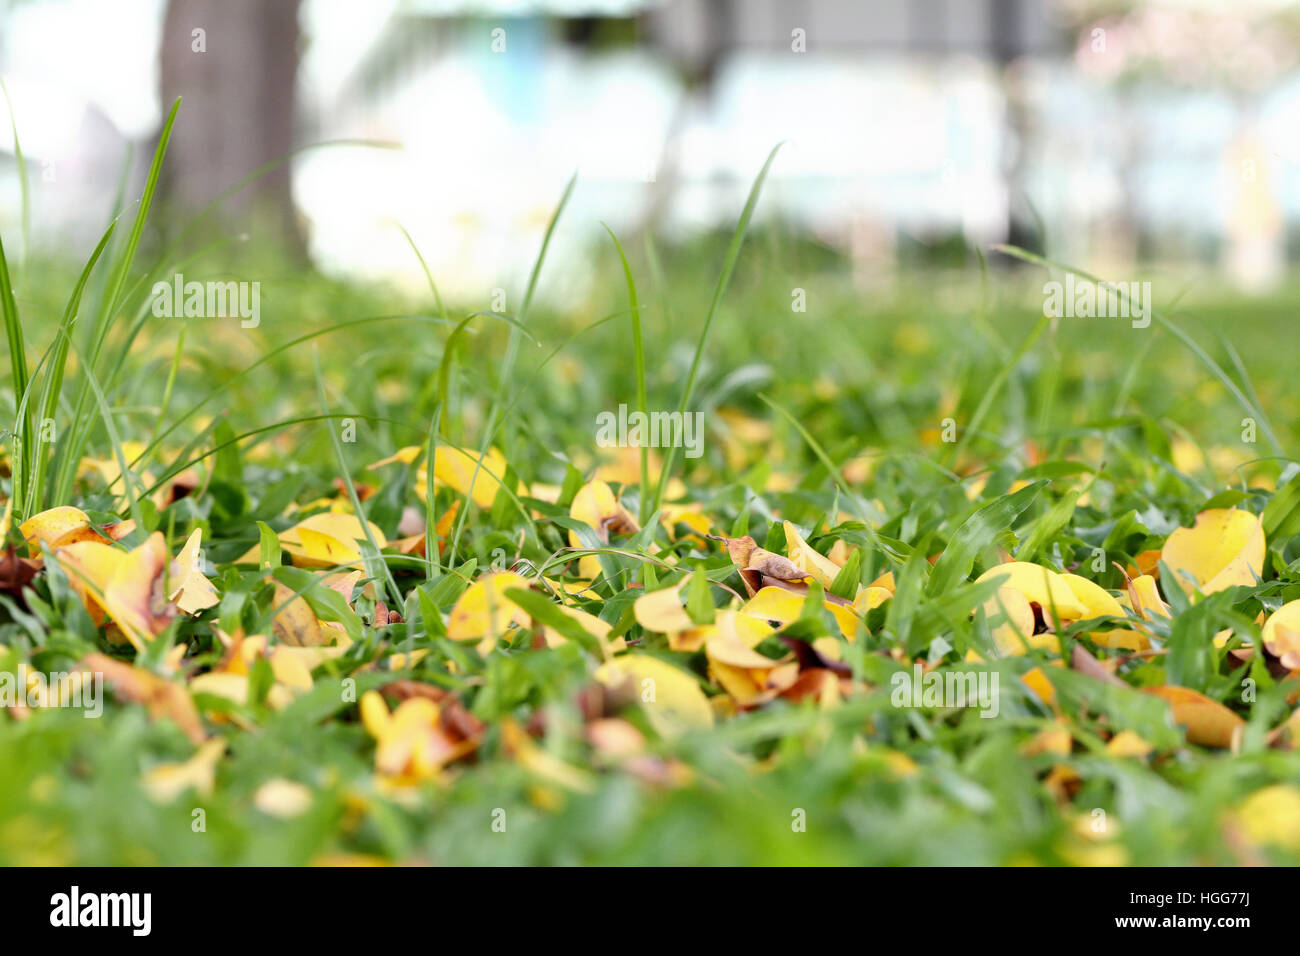 Fresco verde erba nel parco pubblico con foglia secca nella stagione primaverile. Foto Stock